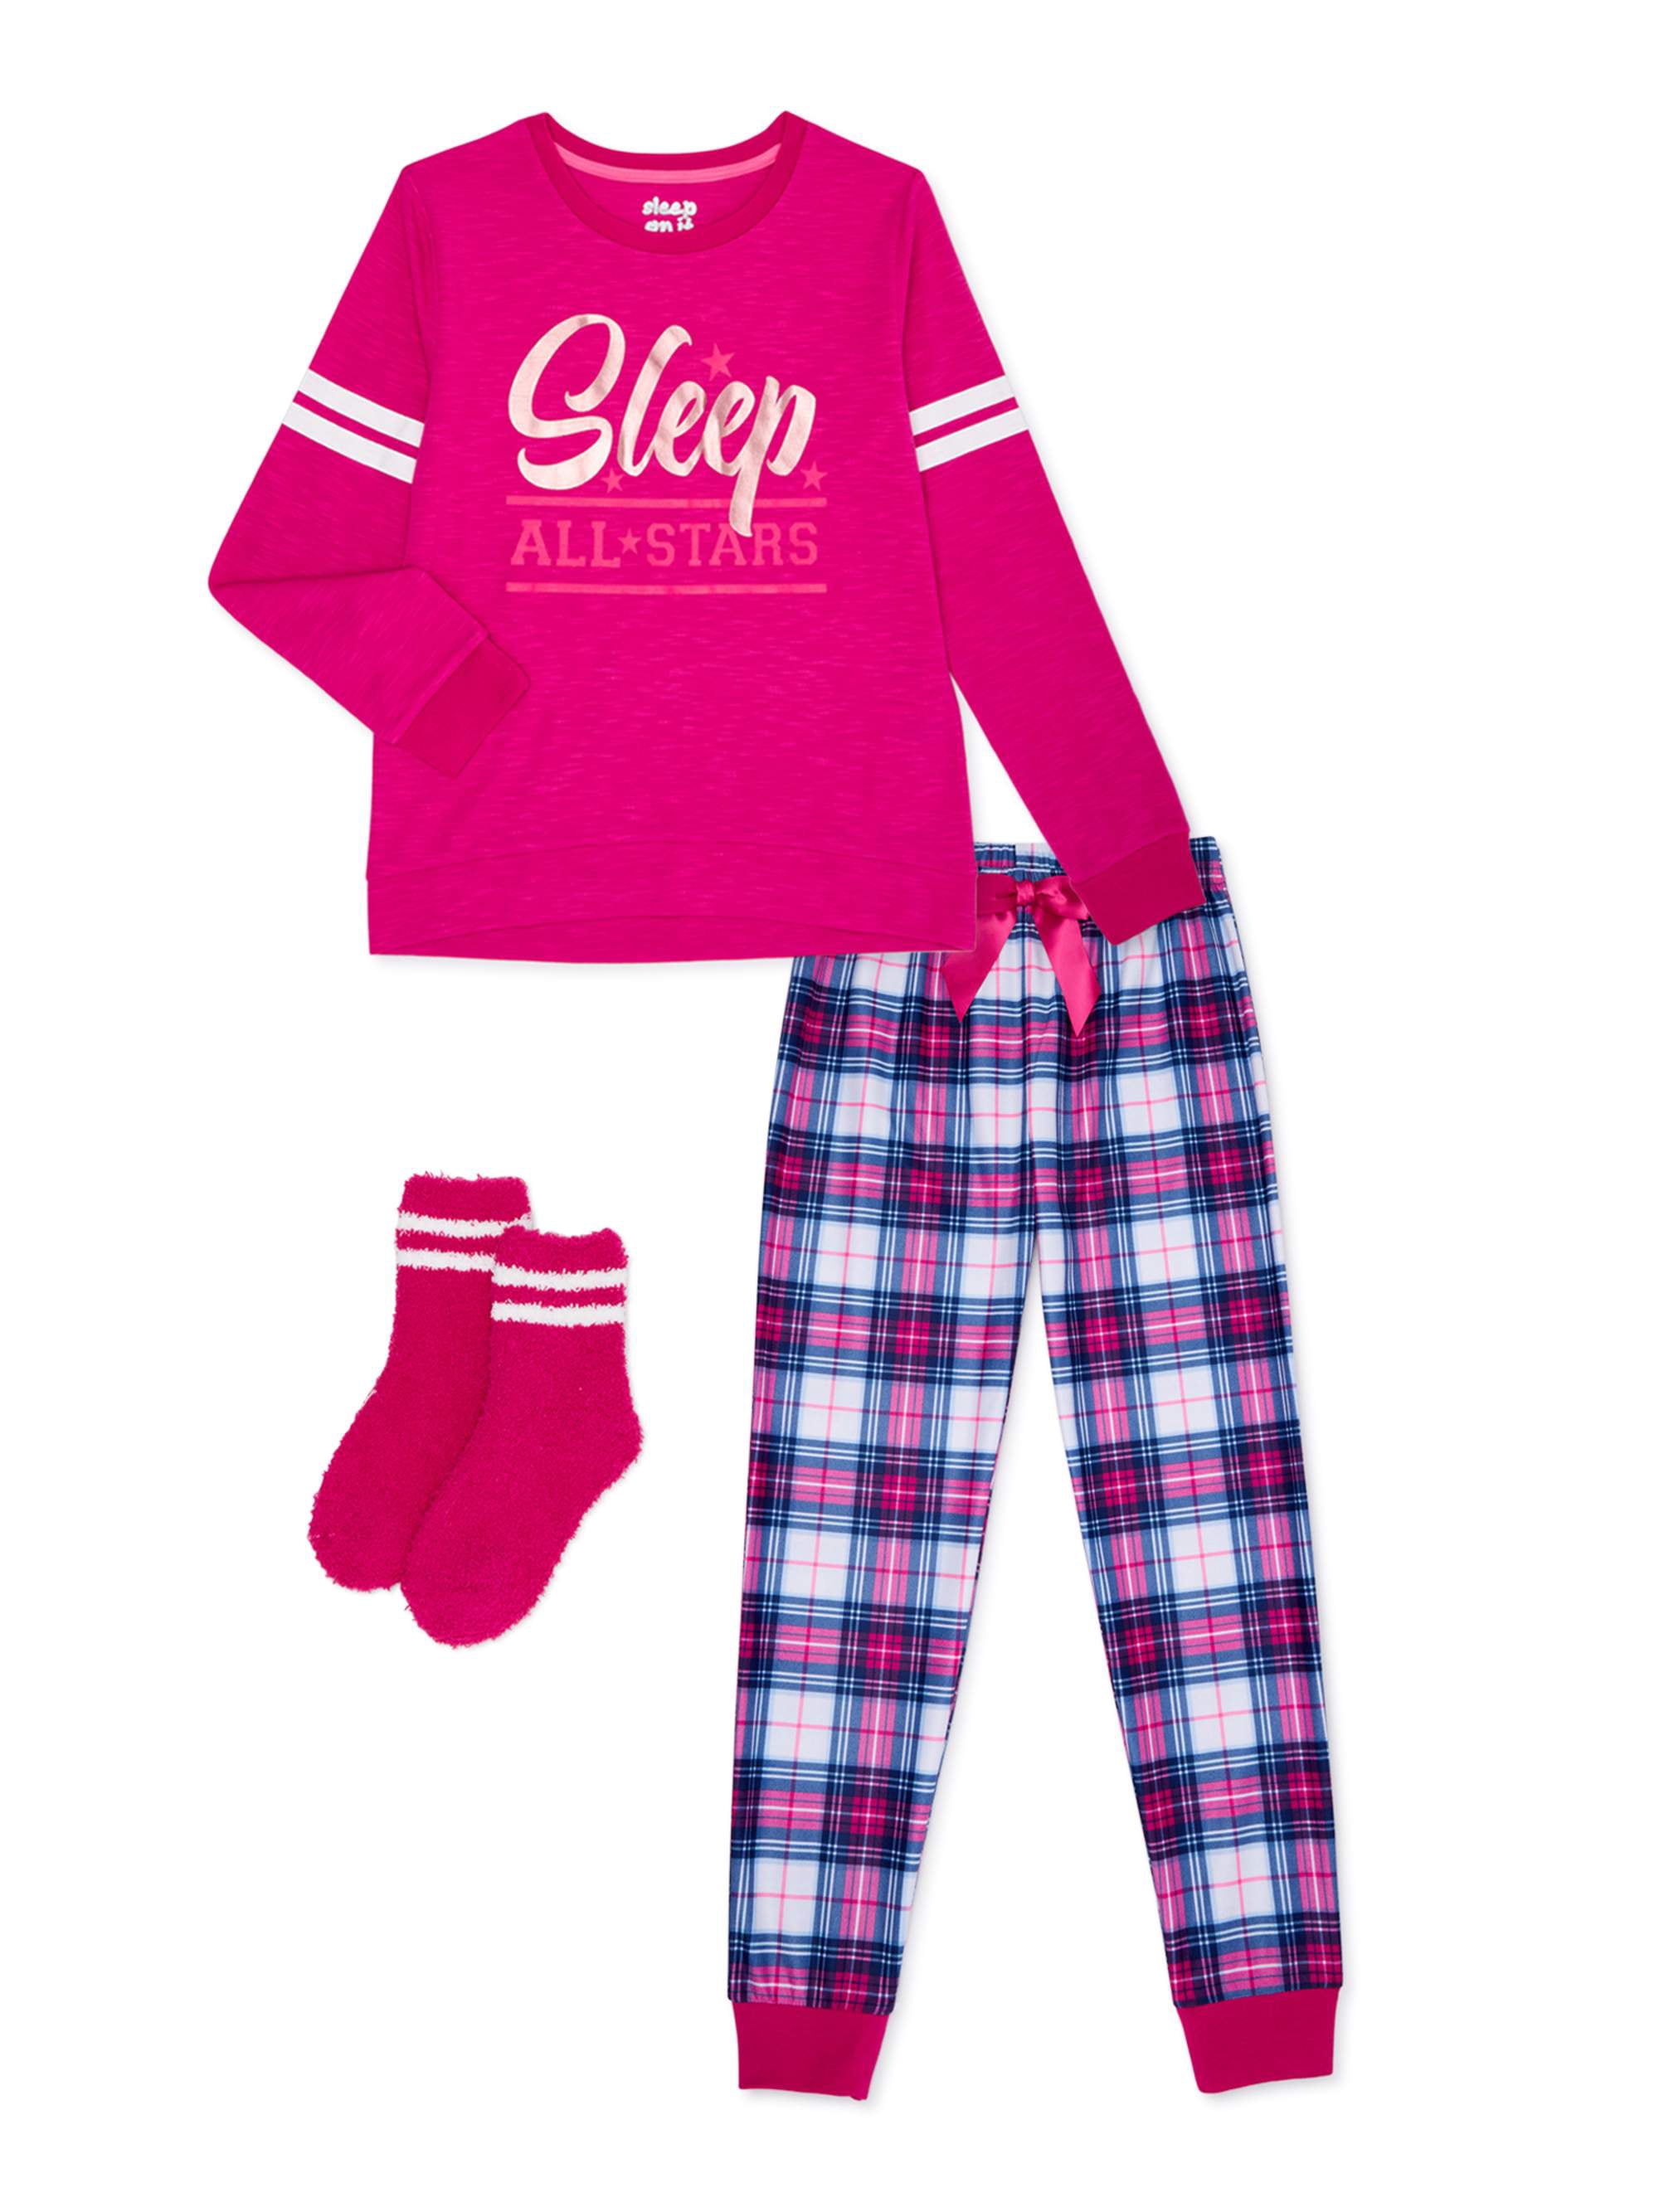 Sleep On It Girls 2-Piece Pajama Set with Socks Sizes 7-16 - Walmart.com